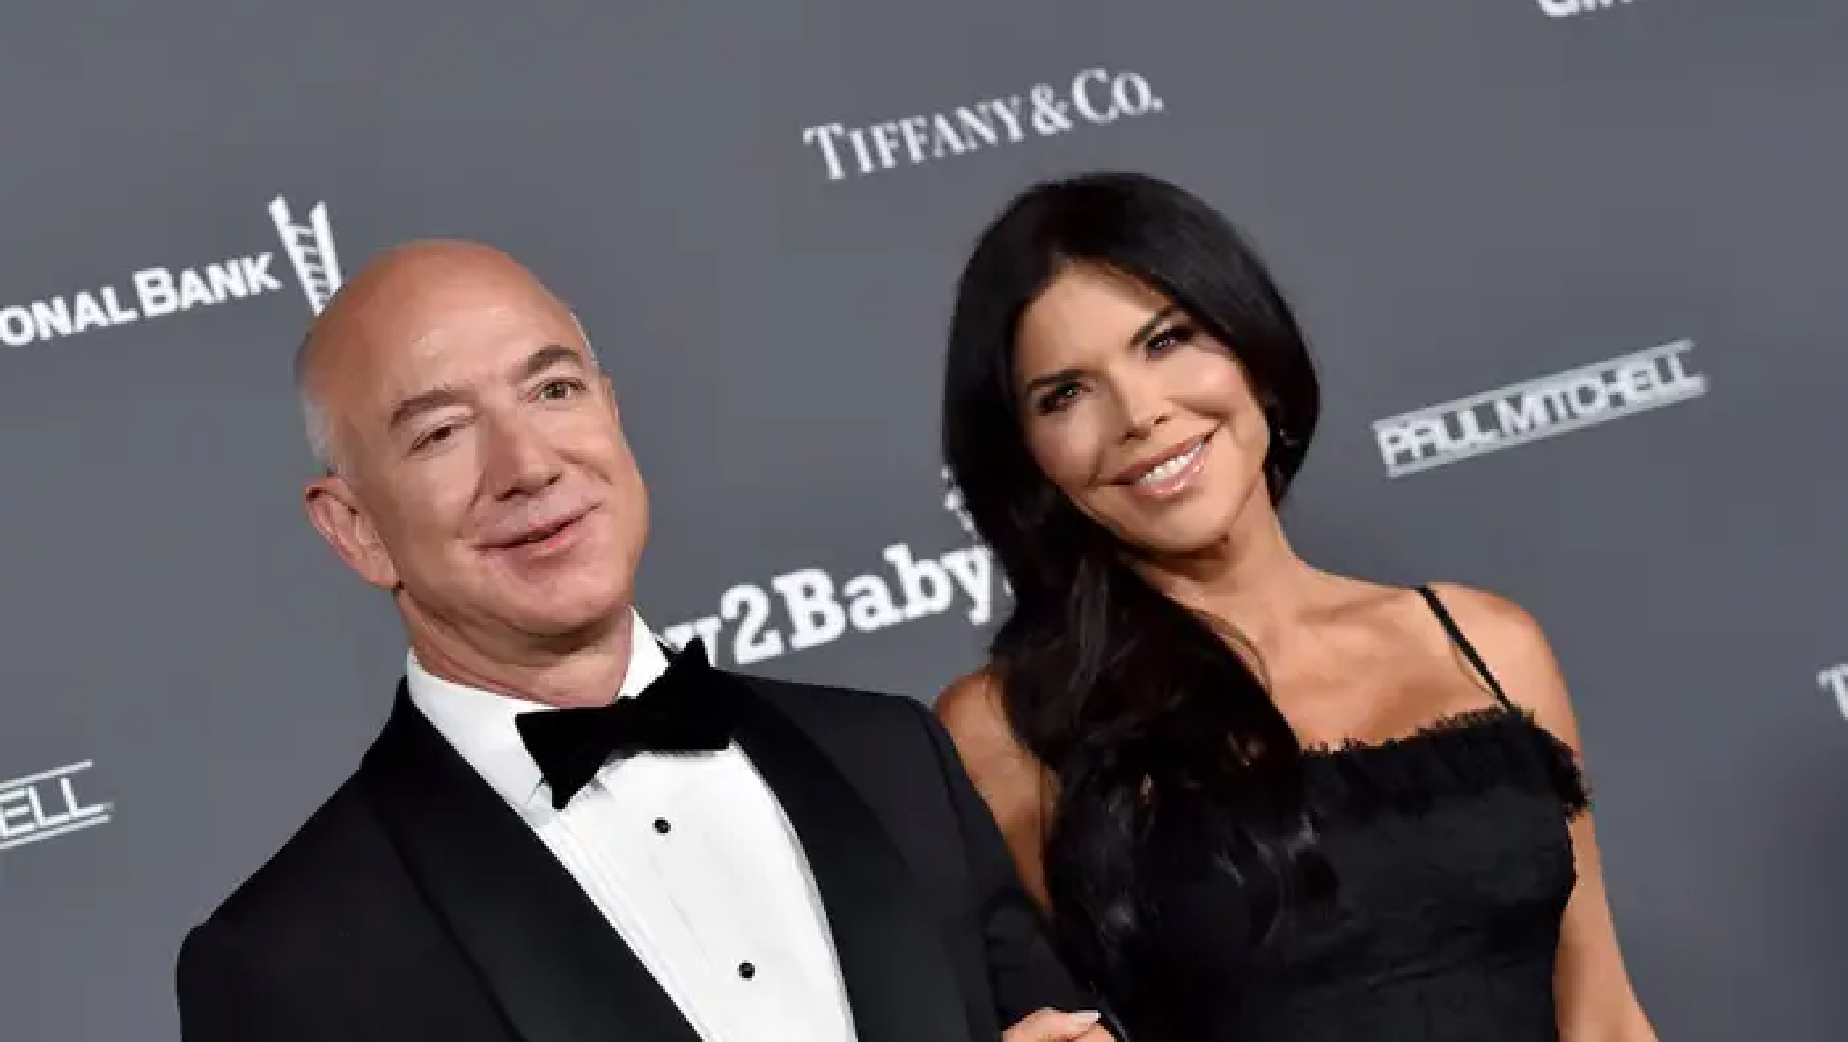 Jeff Bezos and Lauren Sanchez A Timeline of Their Romance